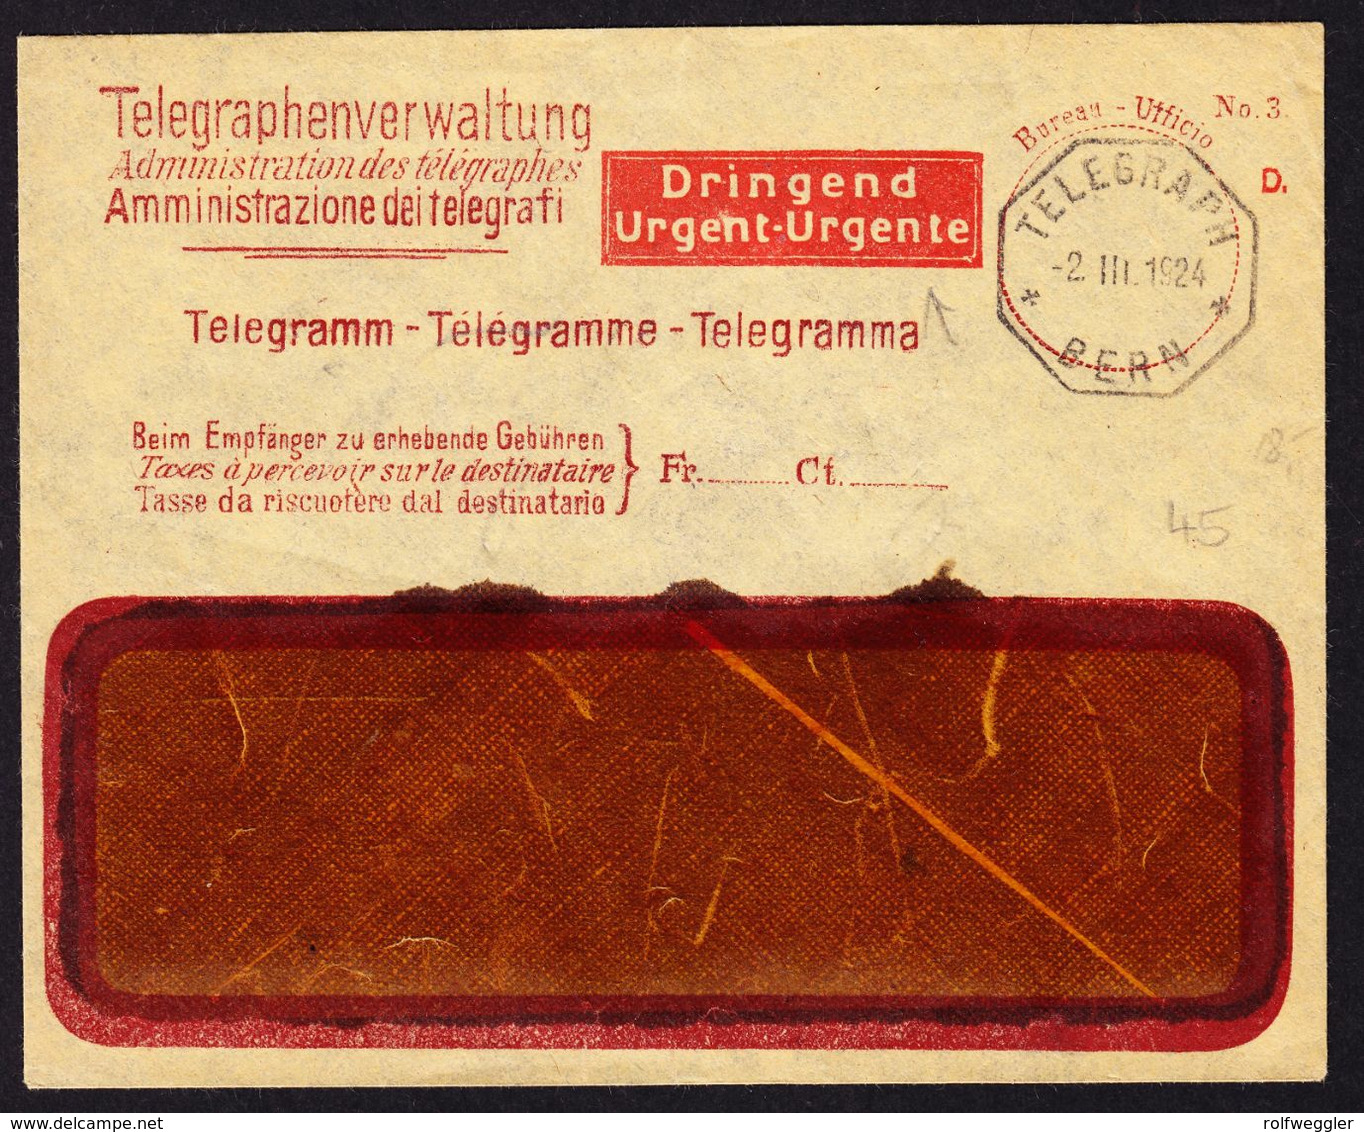 1924 Fenstercouvert Der Telegrafenverwaltung Mit Zudruck "Dringend". Stempel 2.III.1924 Bern - Télégraphe